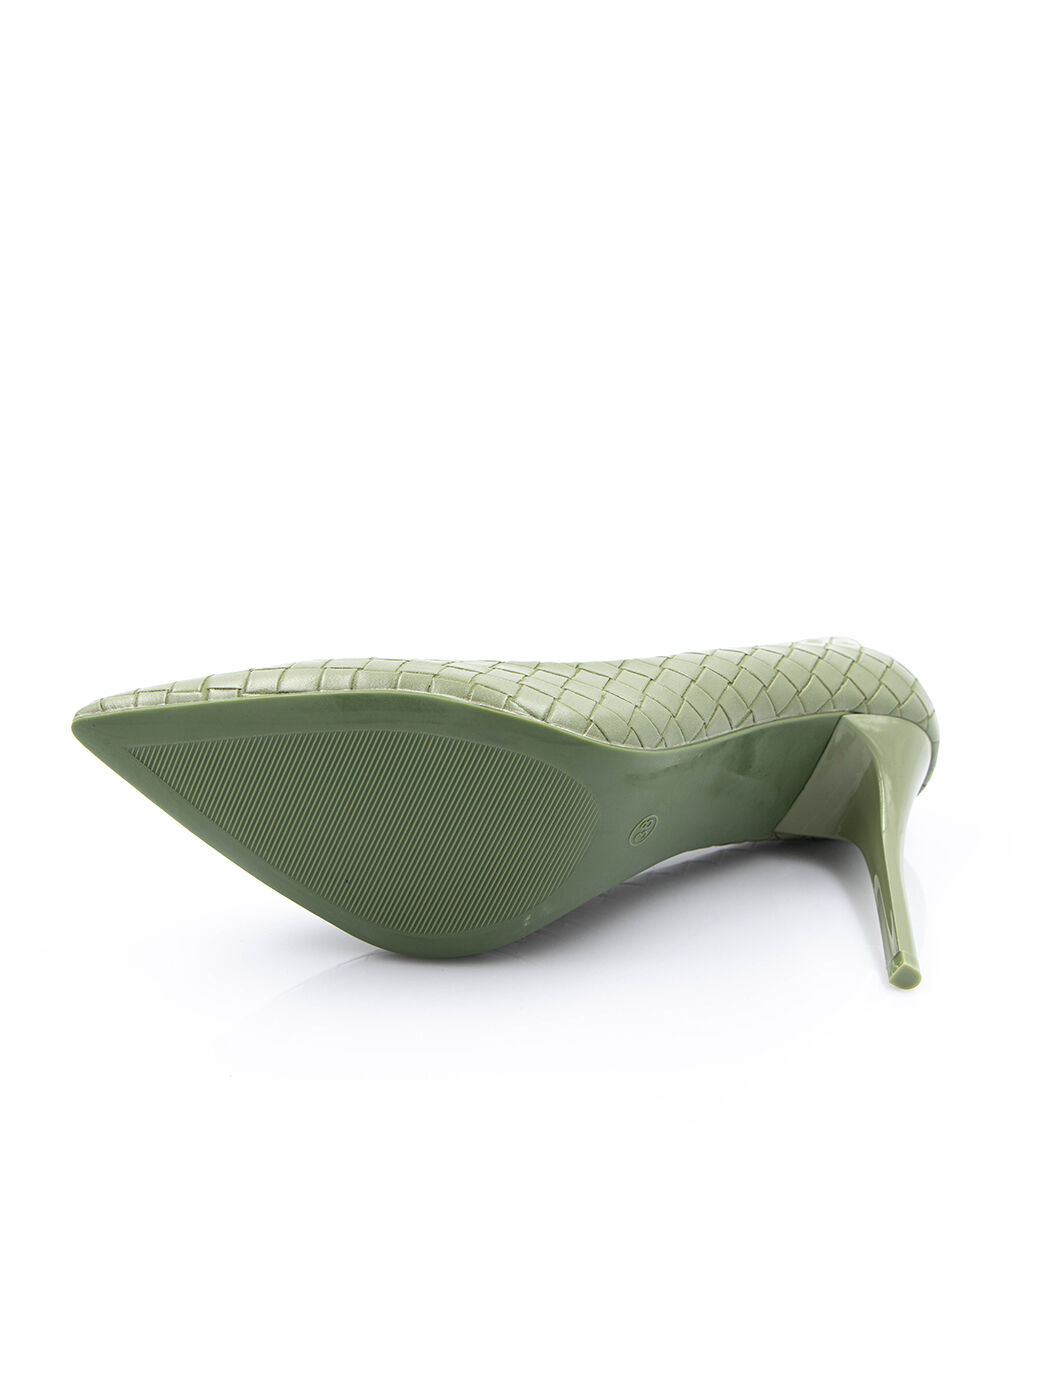 Туфли женские зеленые экокожа каблук шпилька демисезон от производителя FM вид 2